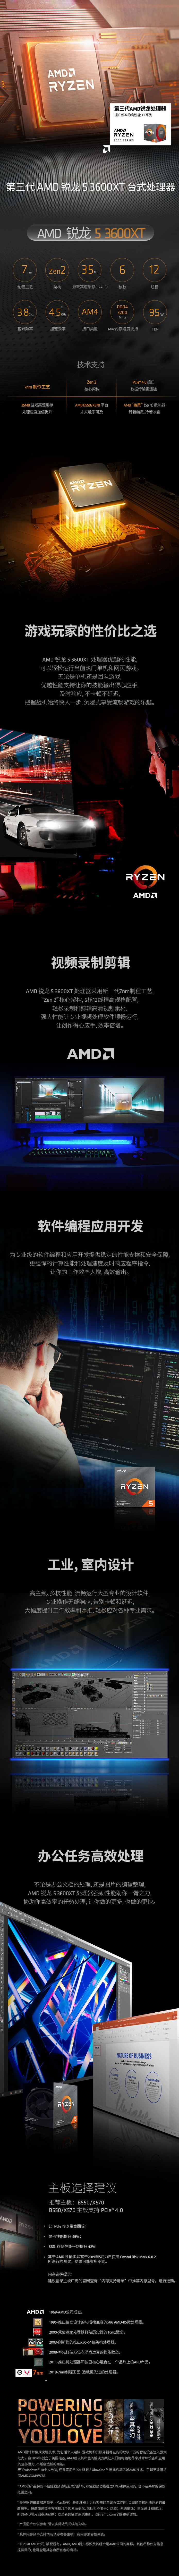 AMD中国电商视觉设计图0